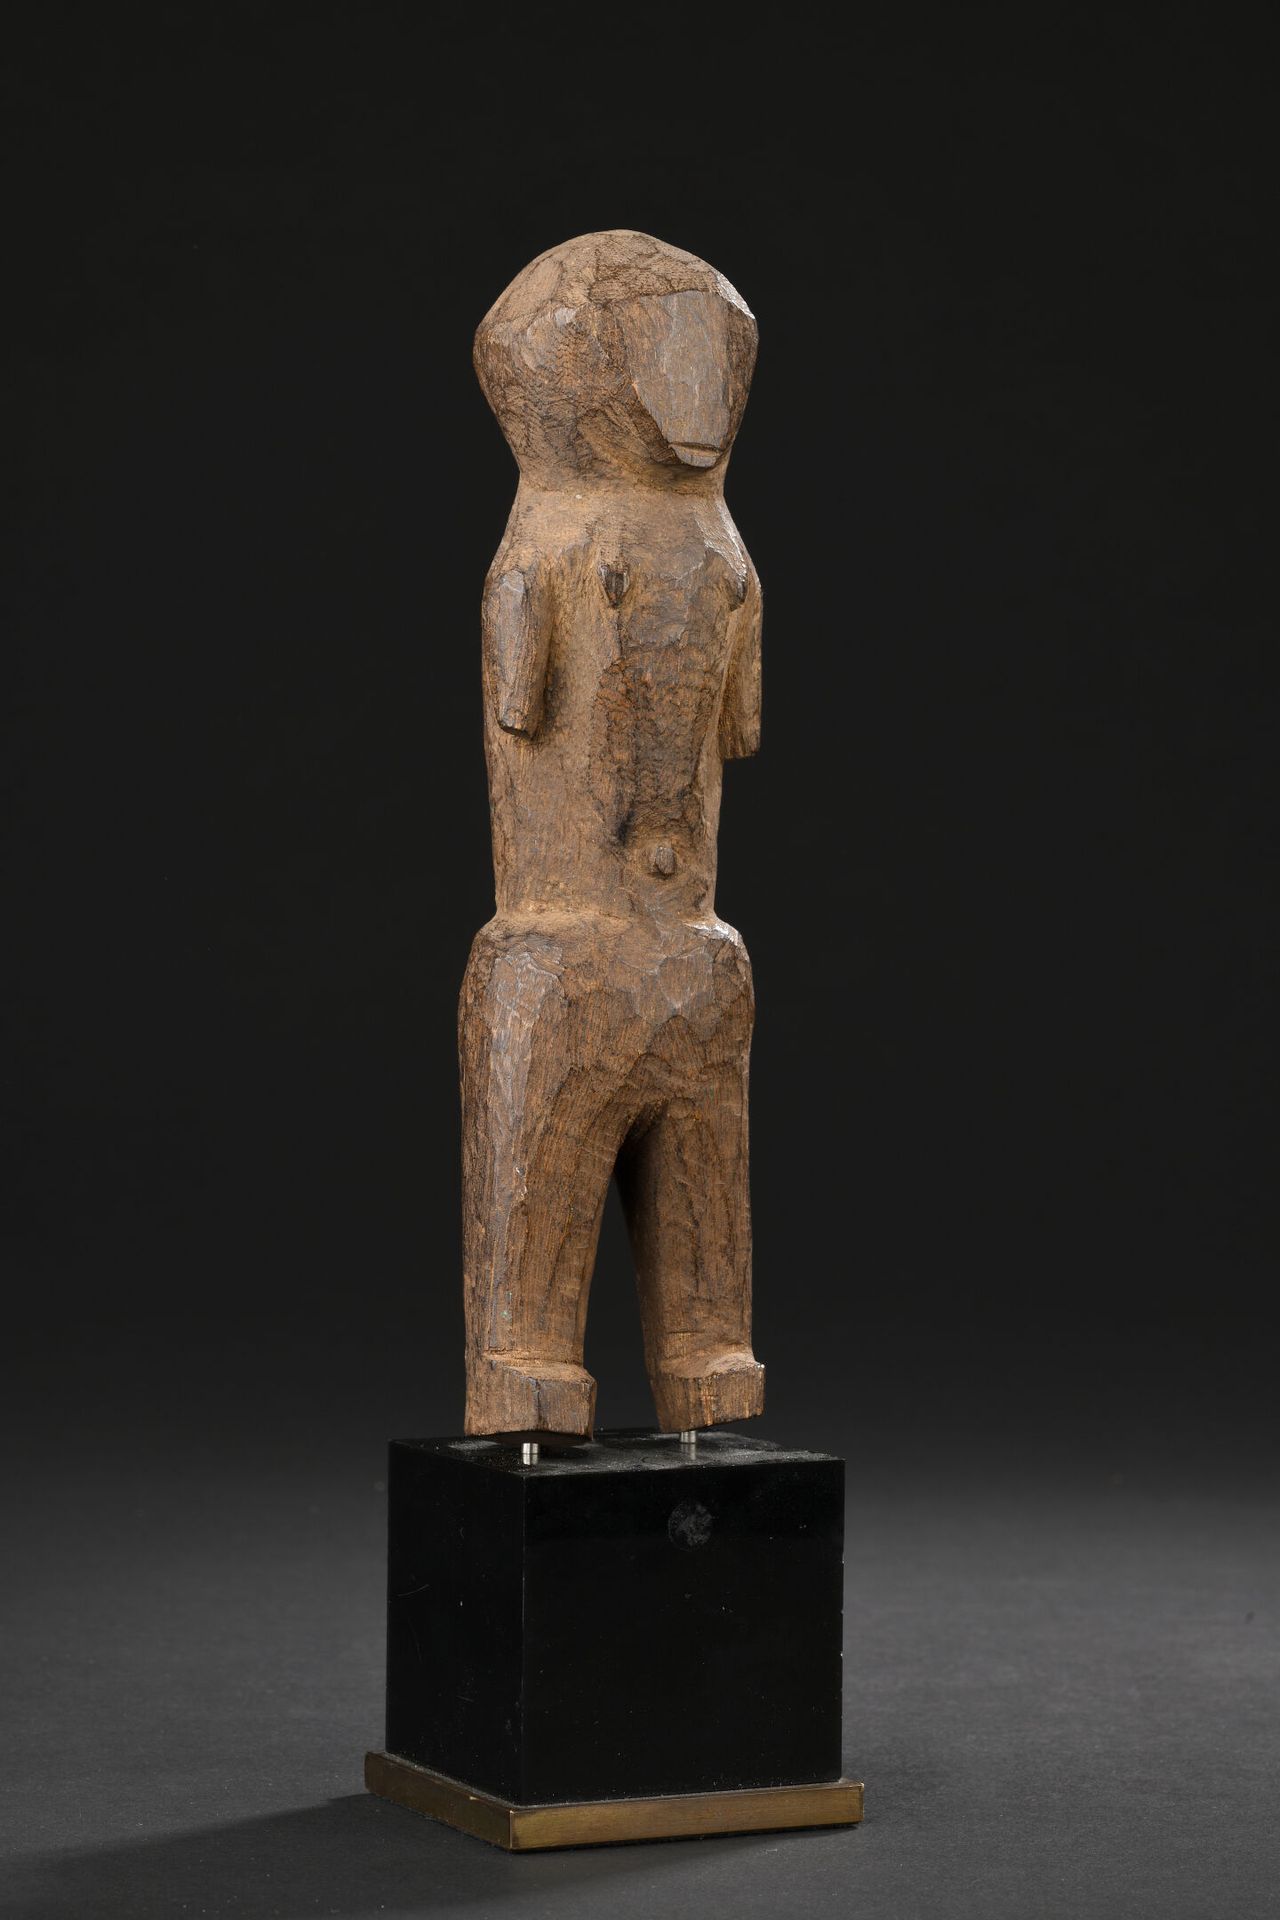 Null *Ngbaka雕像，刚果民主共和国
木头
H.19厘米

出处 : 
私人收藏，瑞士
 
拟人化的雕像，有示意图的体积。构图的极简主义体现在没有任何装&hellip;